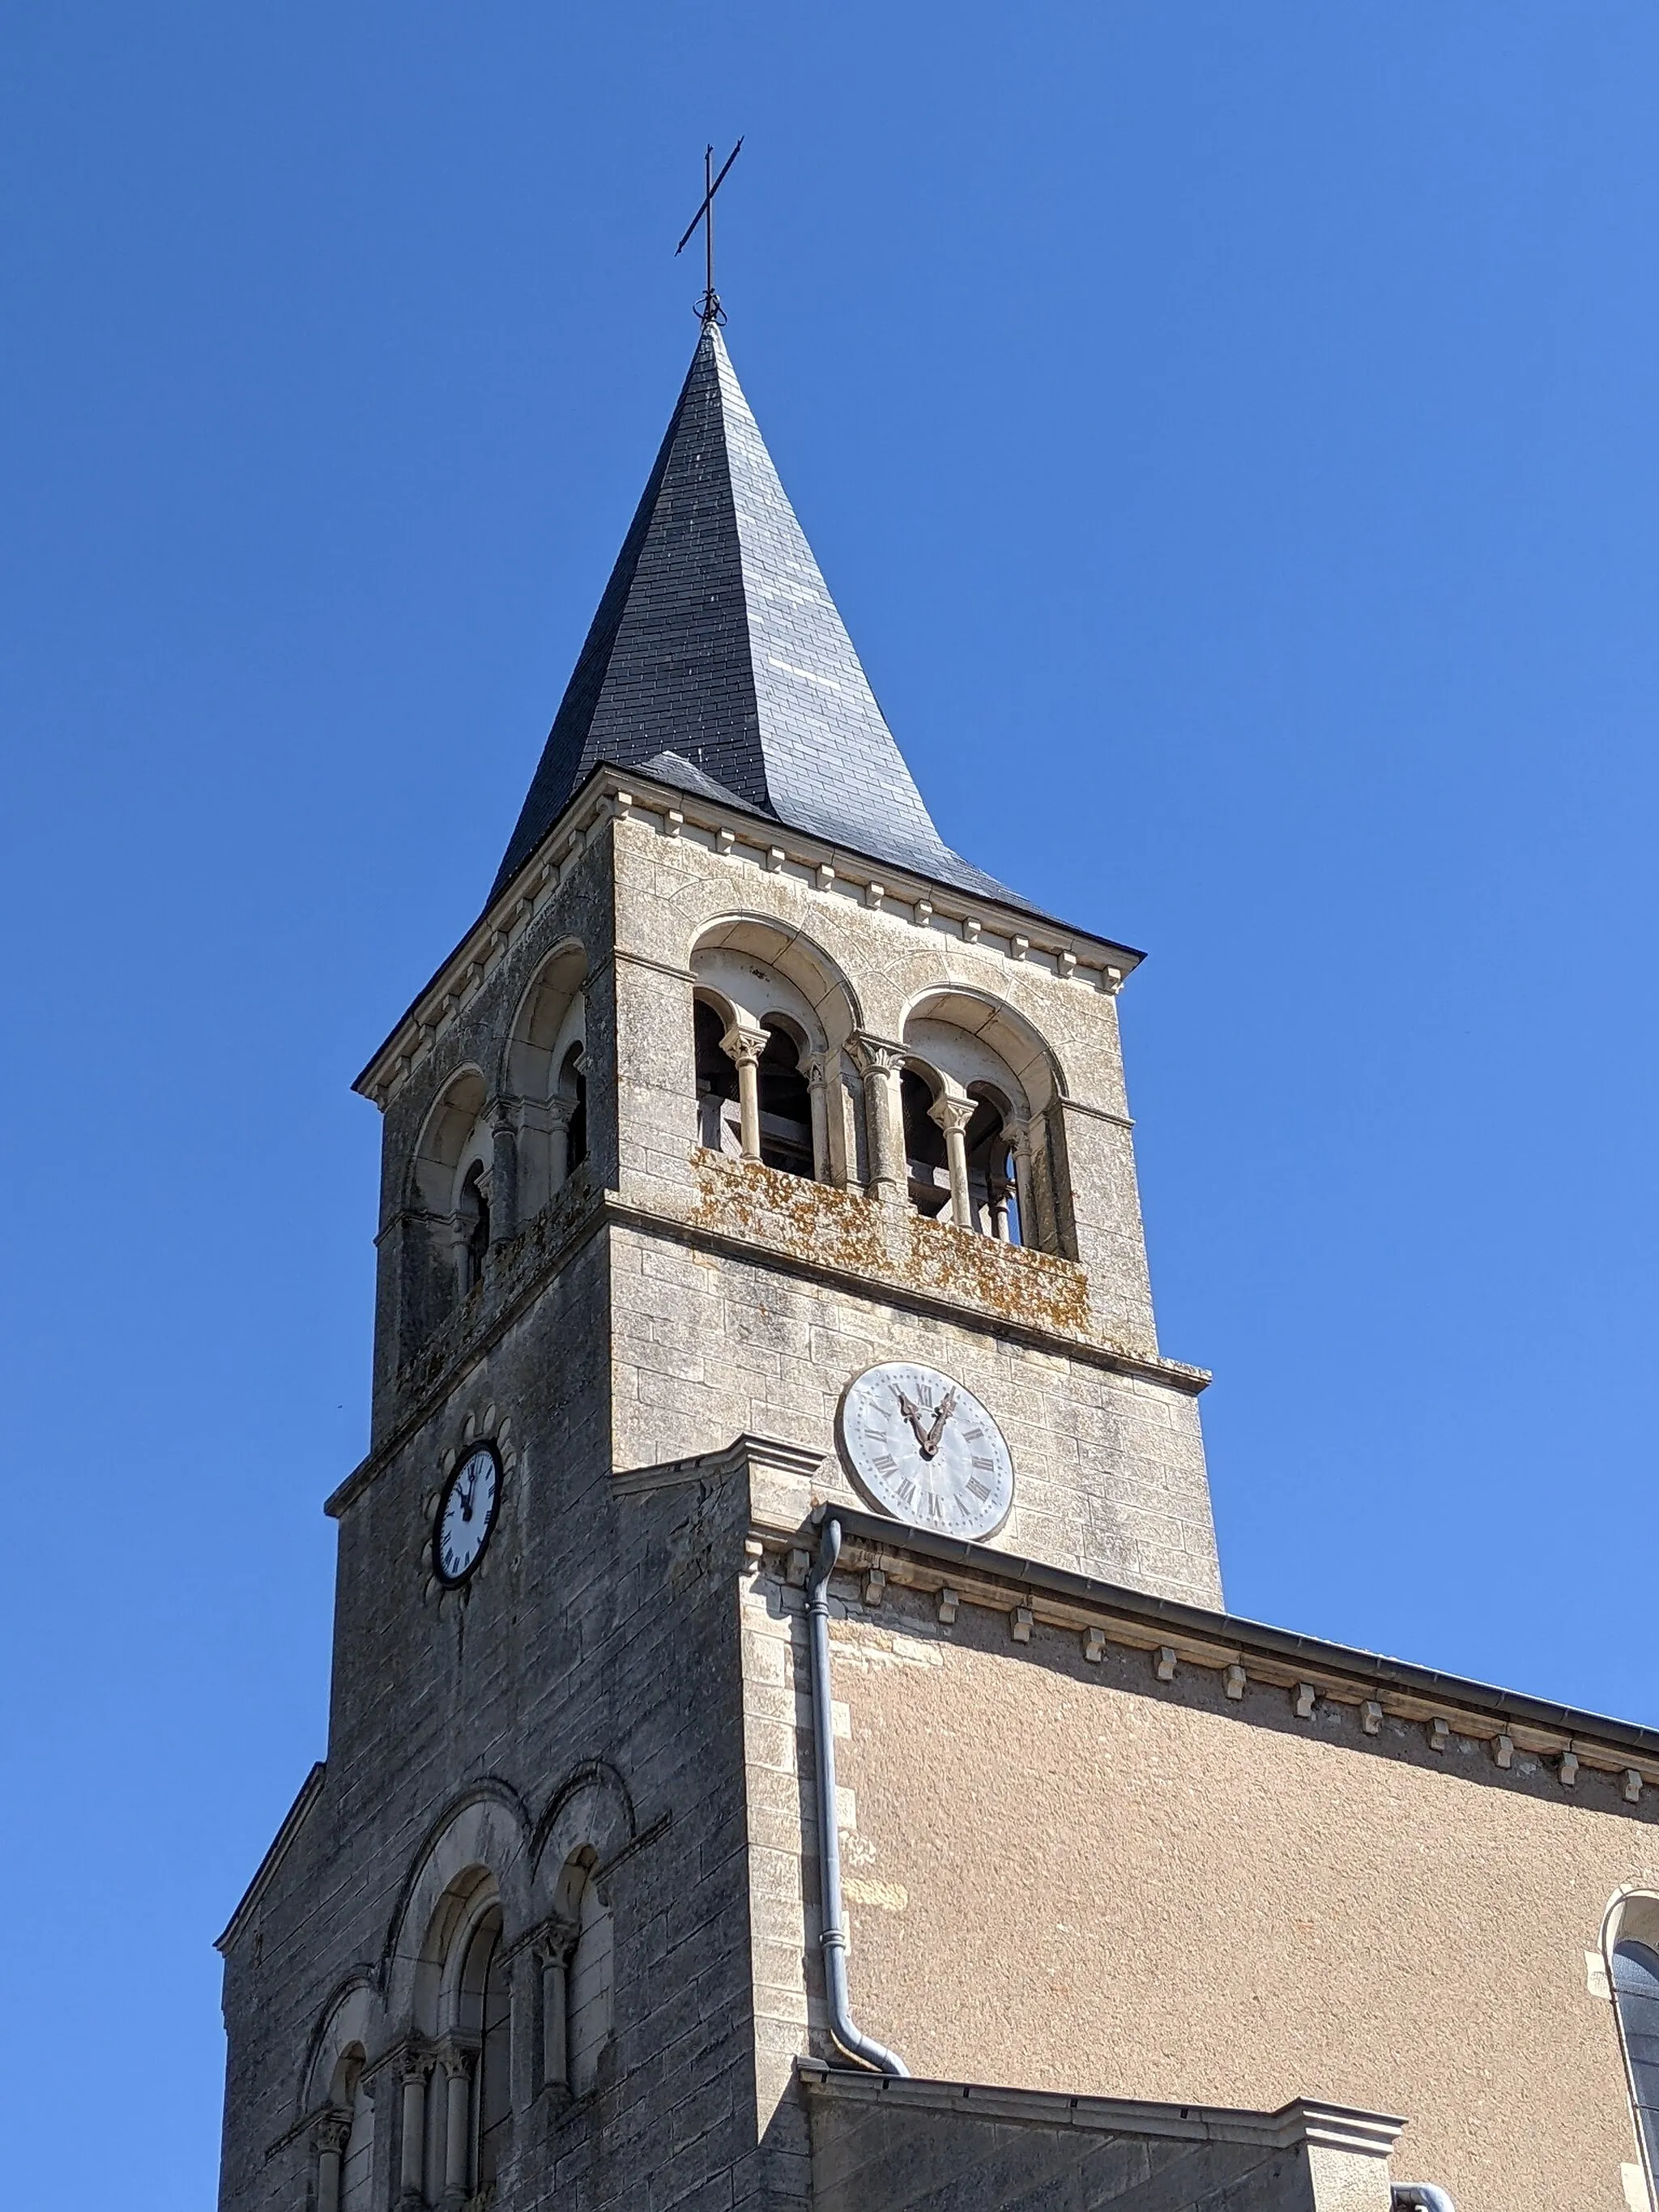 Photo showing: Clocher de l'église de l'Assomption de Cormatin (Saône-et-Loire, France).